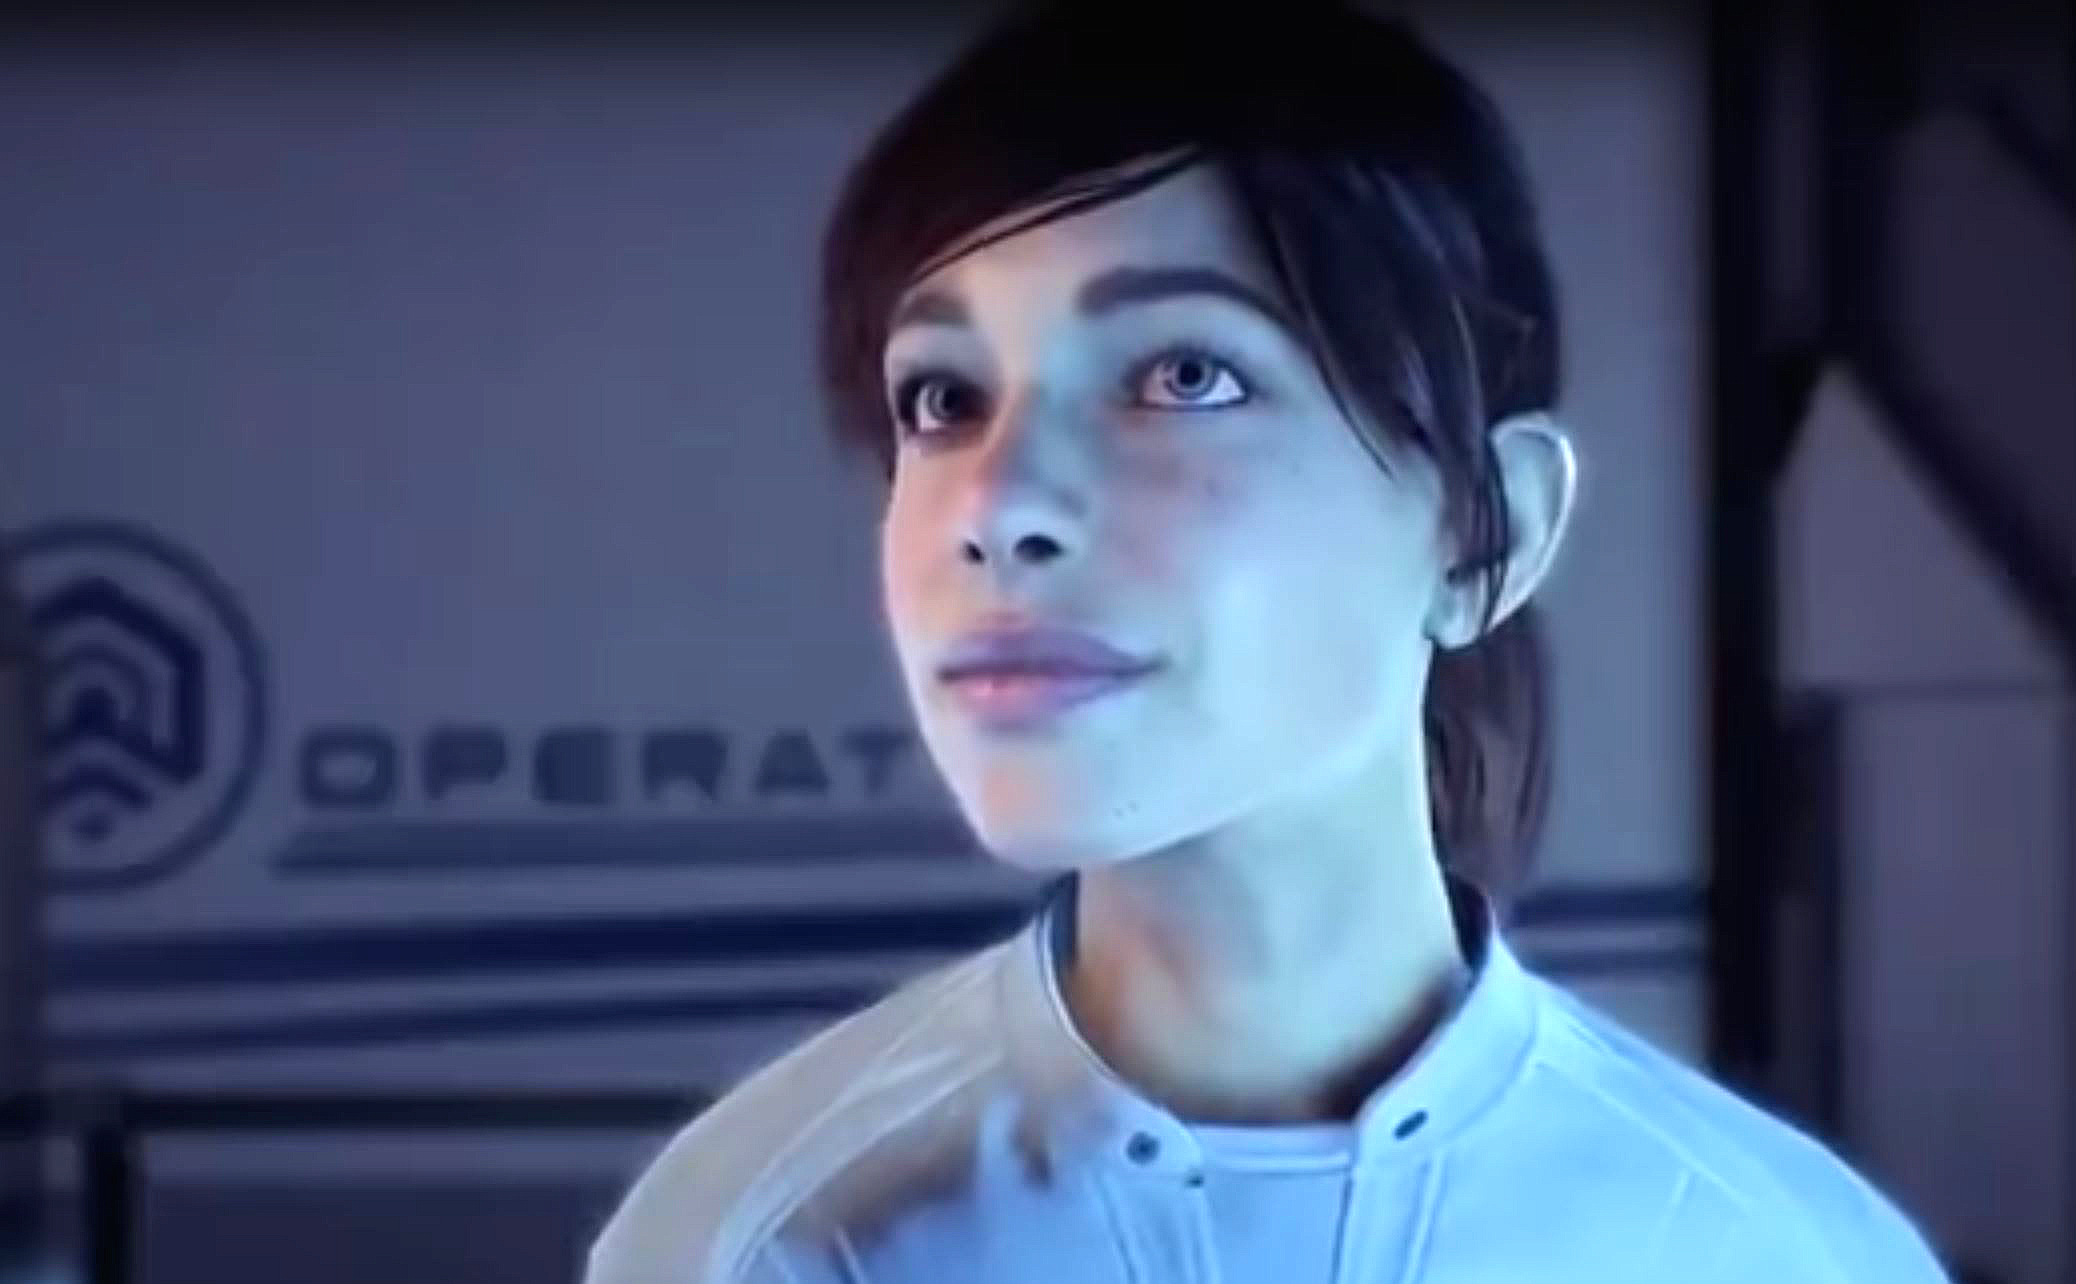 Mass Effect Andromeda: Crack – Piraten behalten ihre Holzgesichter